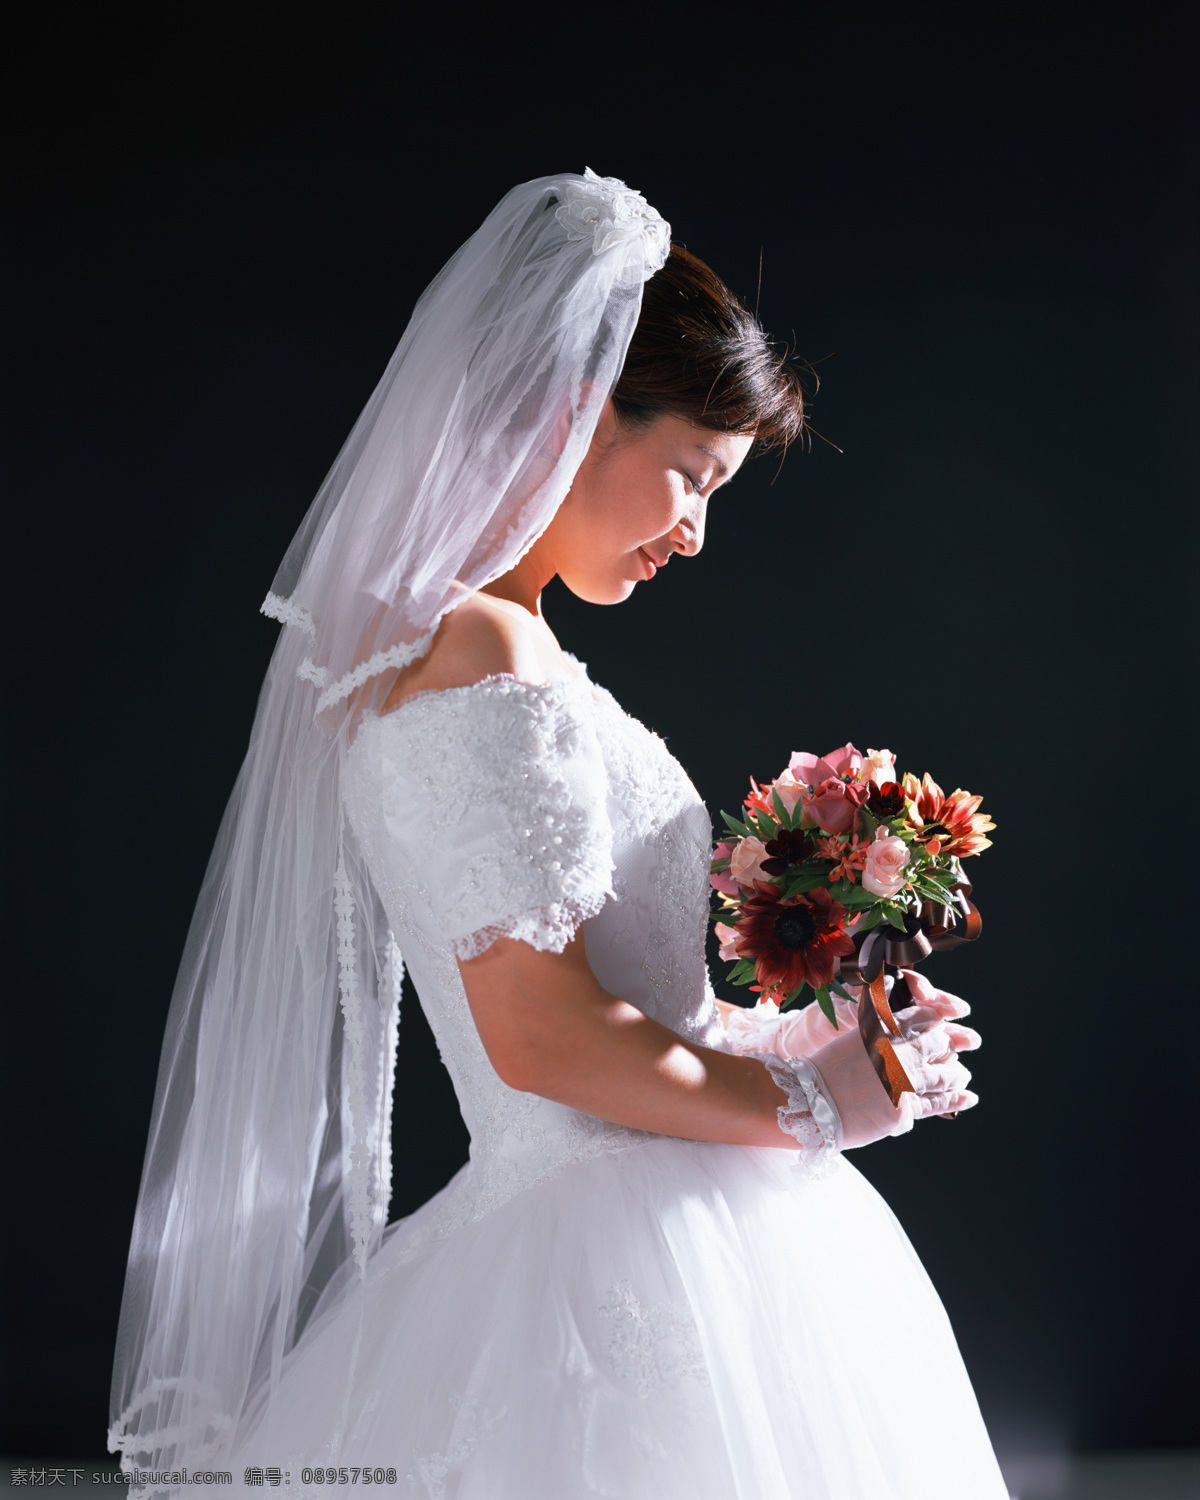 新娘 婚纱照 结婚照 结婚照片 新婚照片 花 人物图库 人物摄影 摄影图库